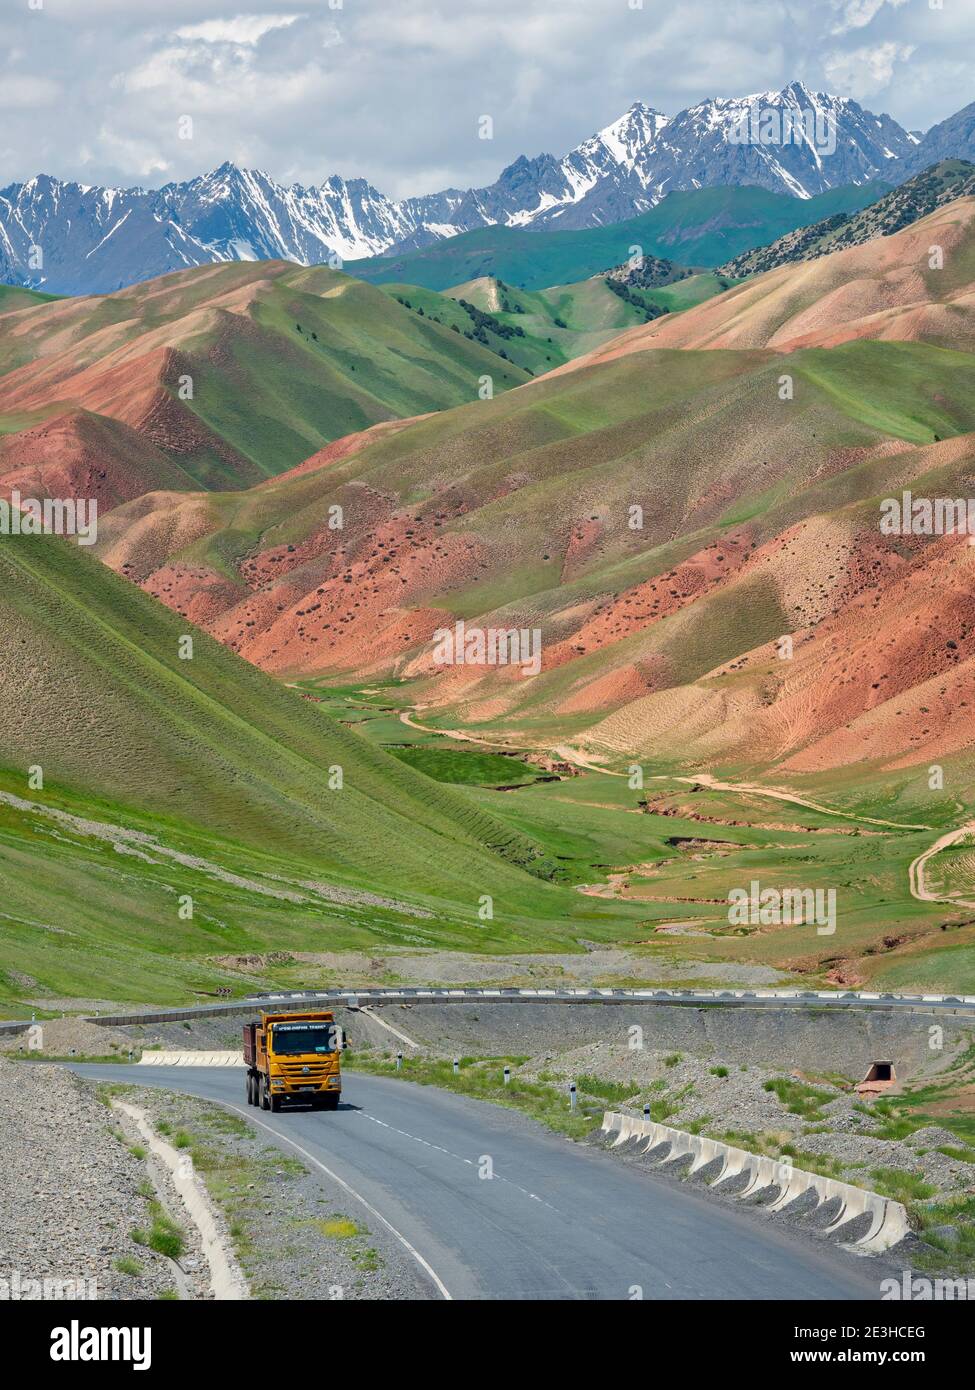 Landschaft entlang des Pamir Highway. Die Bergkette Tian Shan oder Heavenly Mountains. Asien, Zentralasien, Kirgisistan Stockfoto